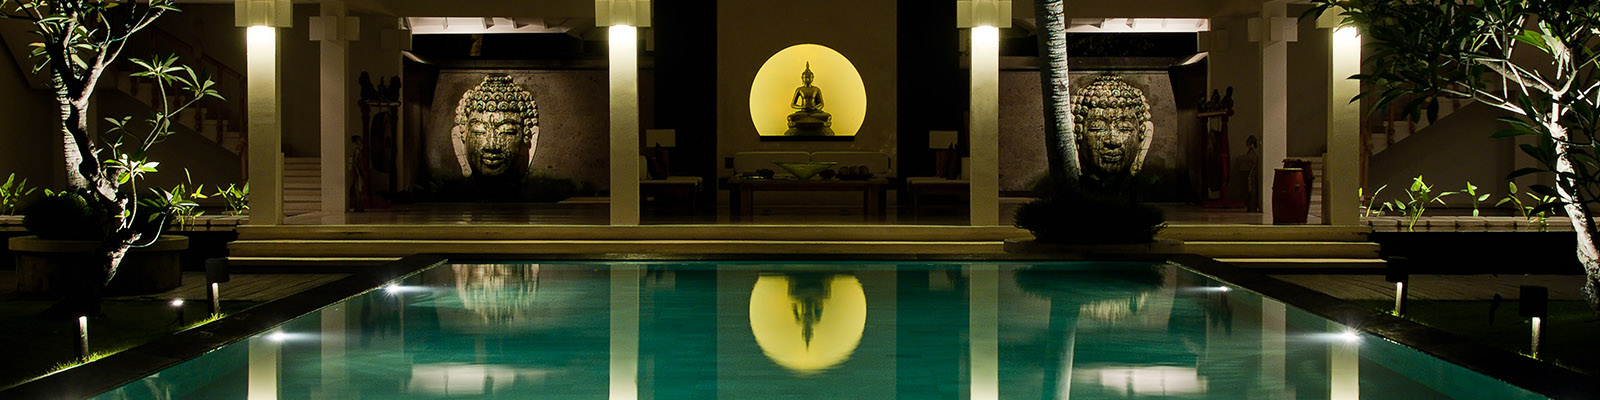 Bali | Villa Matahari | Buddha reflection